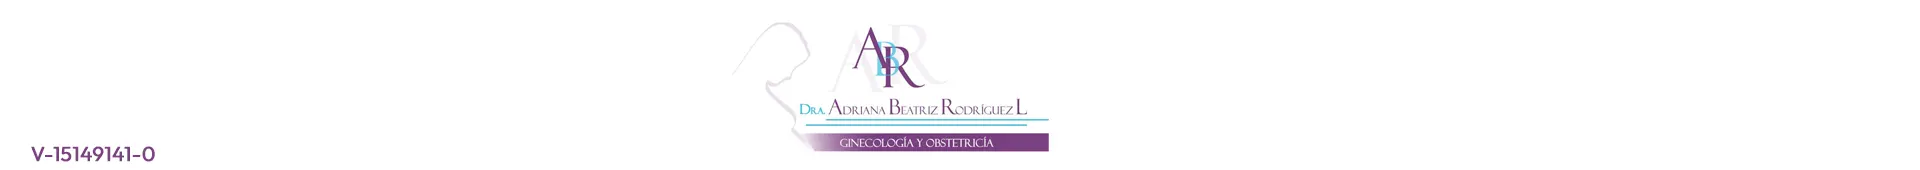 Imagen 1 del perfil de Dra. Adriana Rodríguez